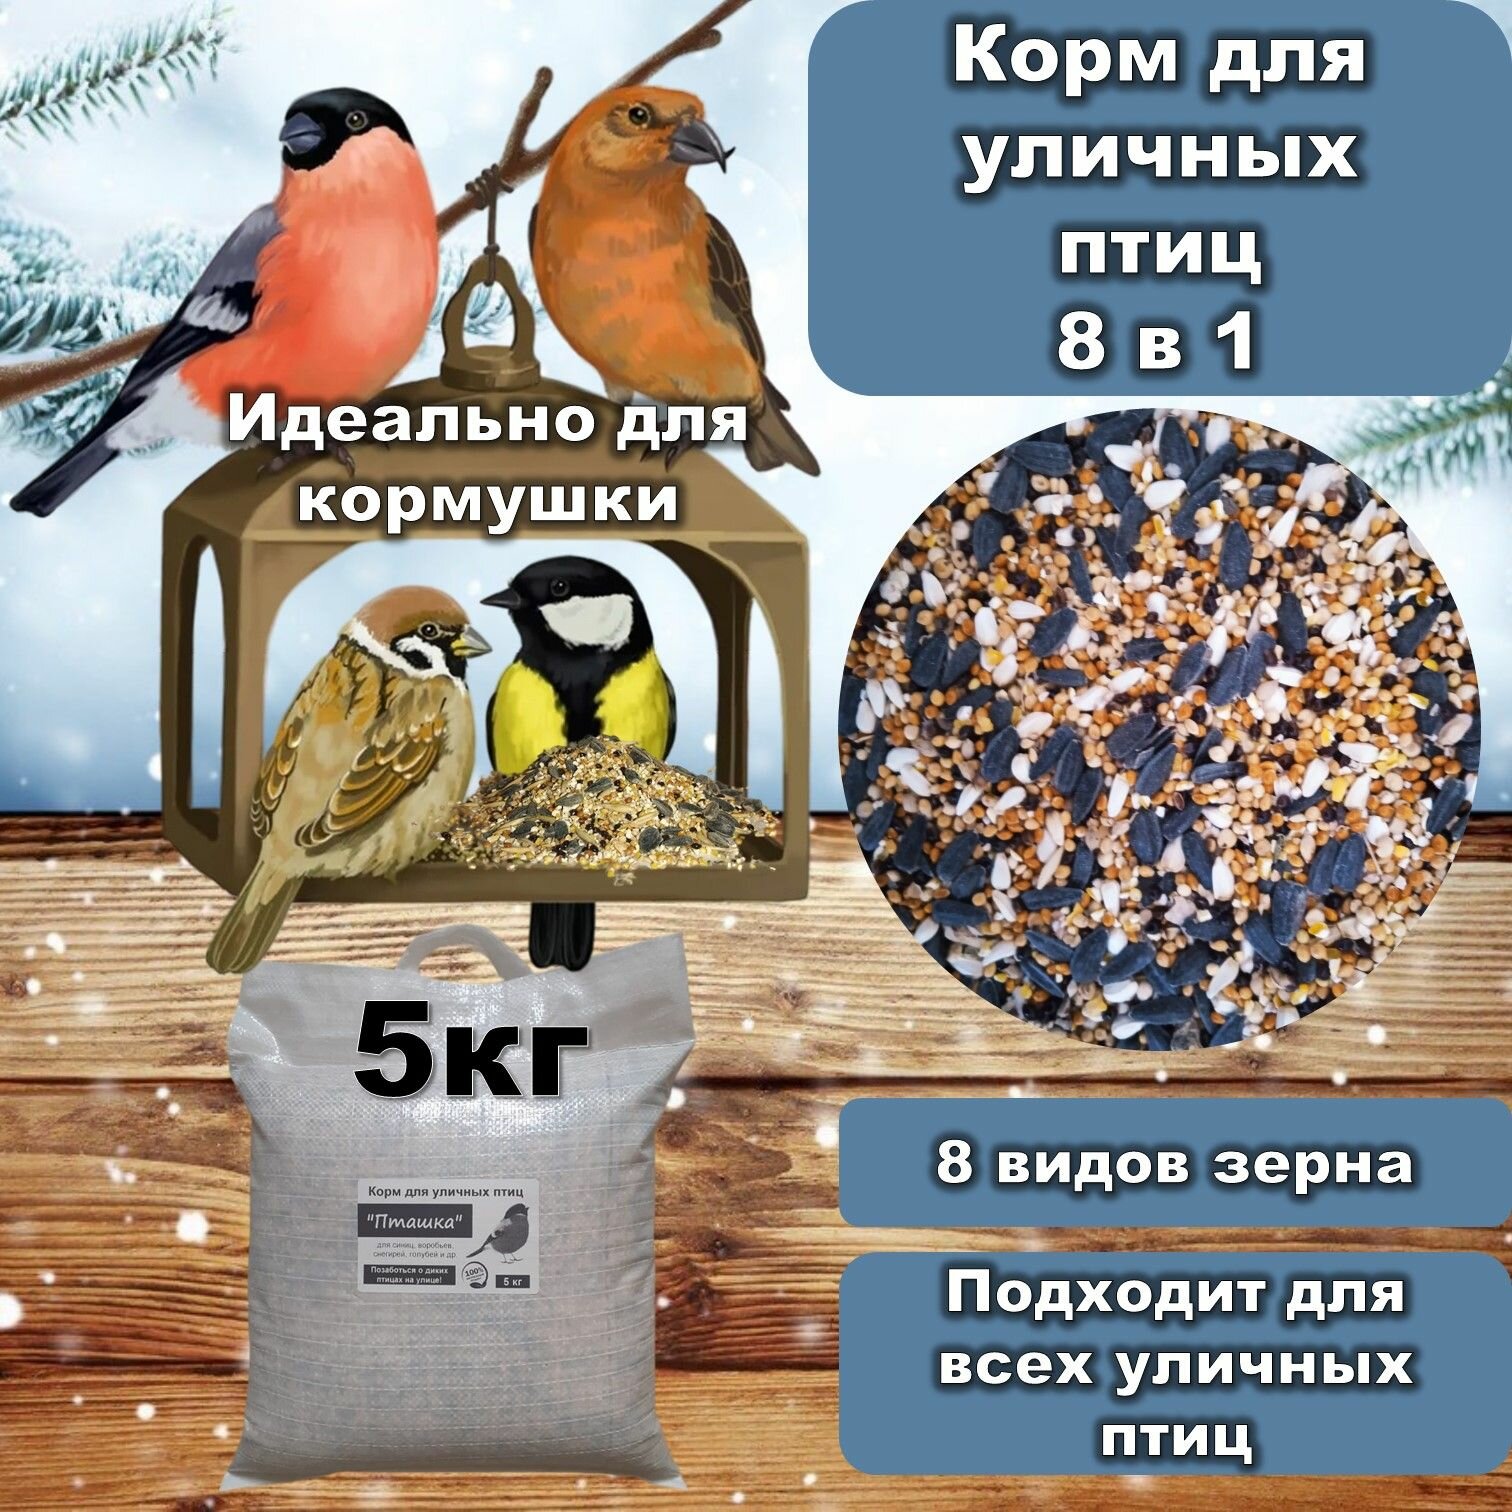 Корм для птиц 8 в 1 "Пташка" зерновой для всех уличных и лесных птиц, 5 кг